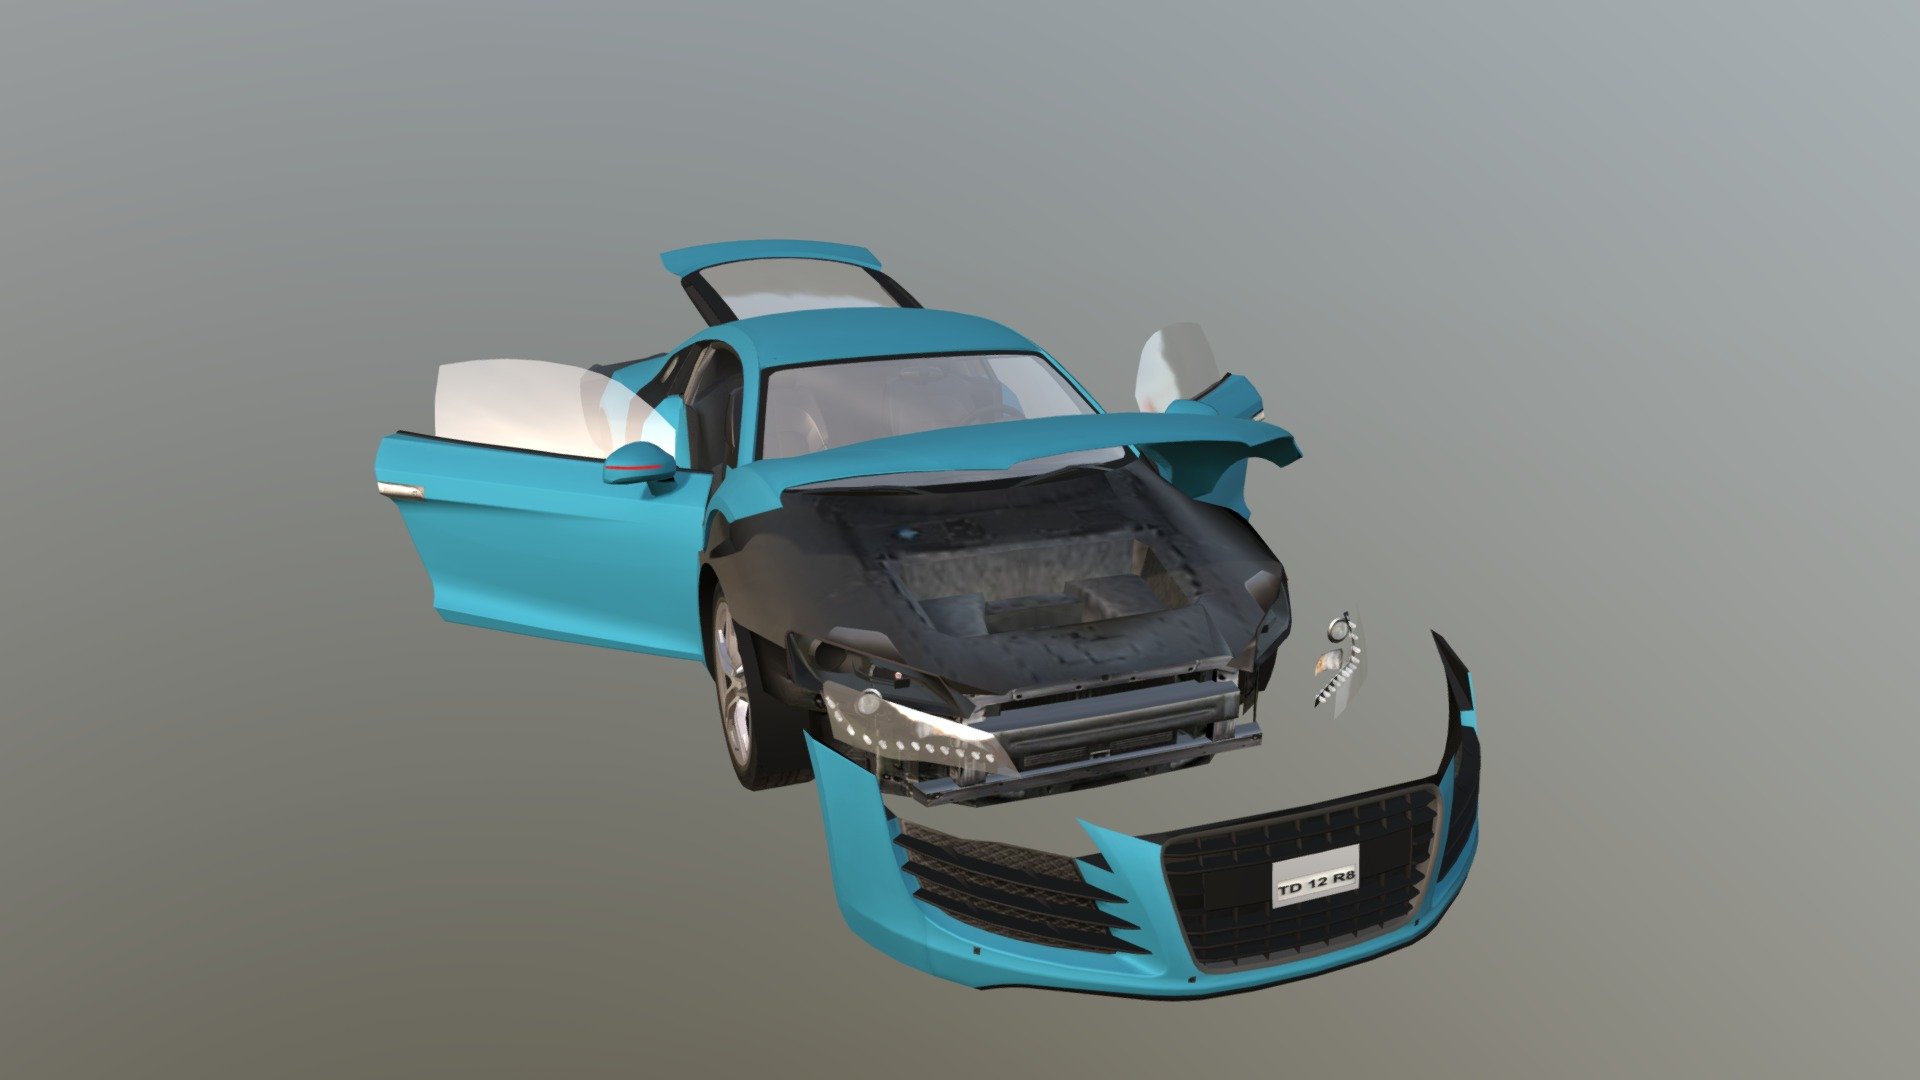 Real Car 13 Separated Parts - 3D model by Maker Games Studios (@MakerGamesStudios) 3d model